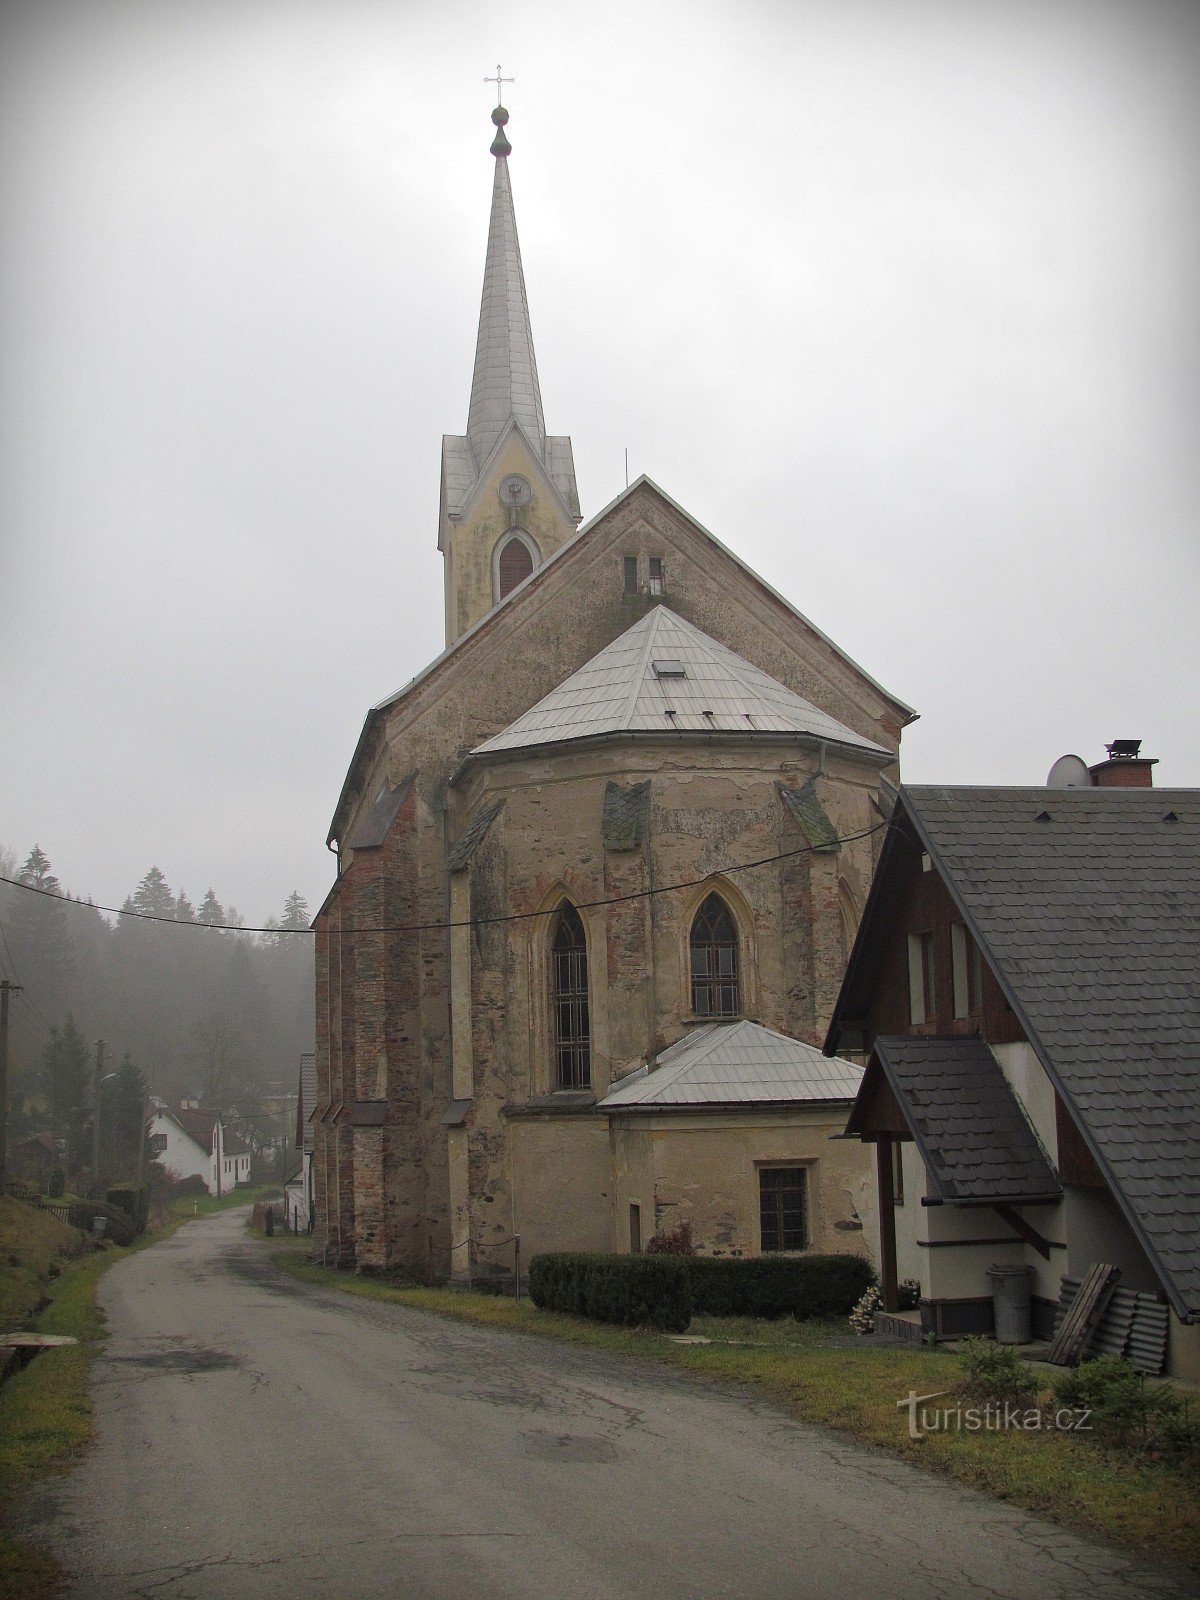 Церковь св. Бедриха в Бедрихове